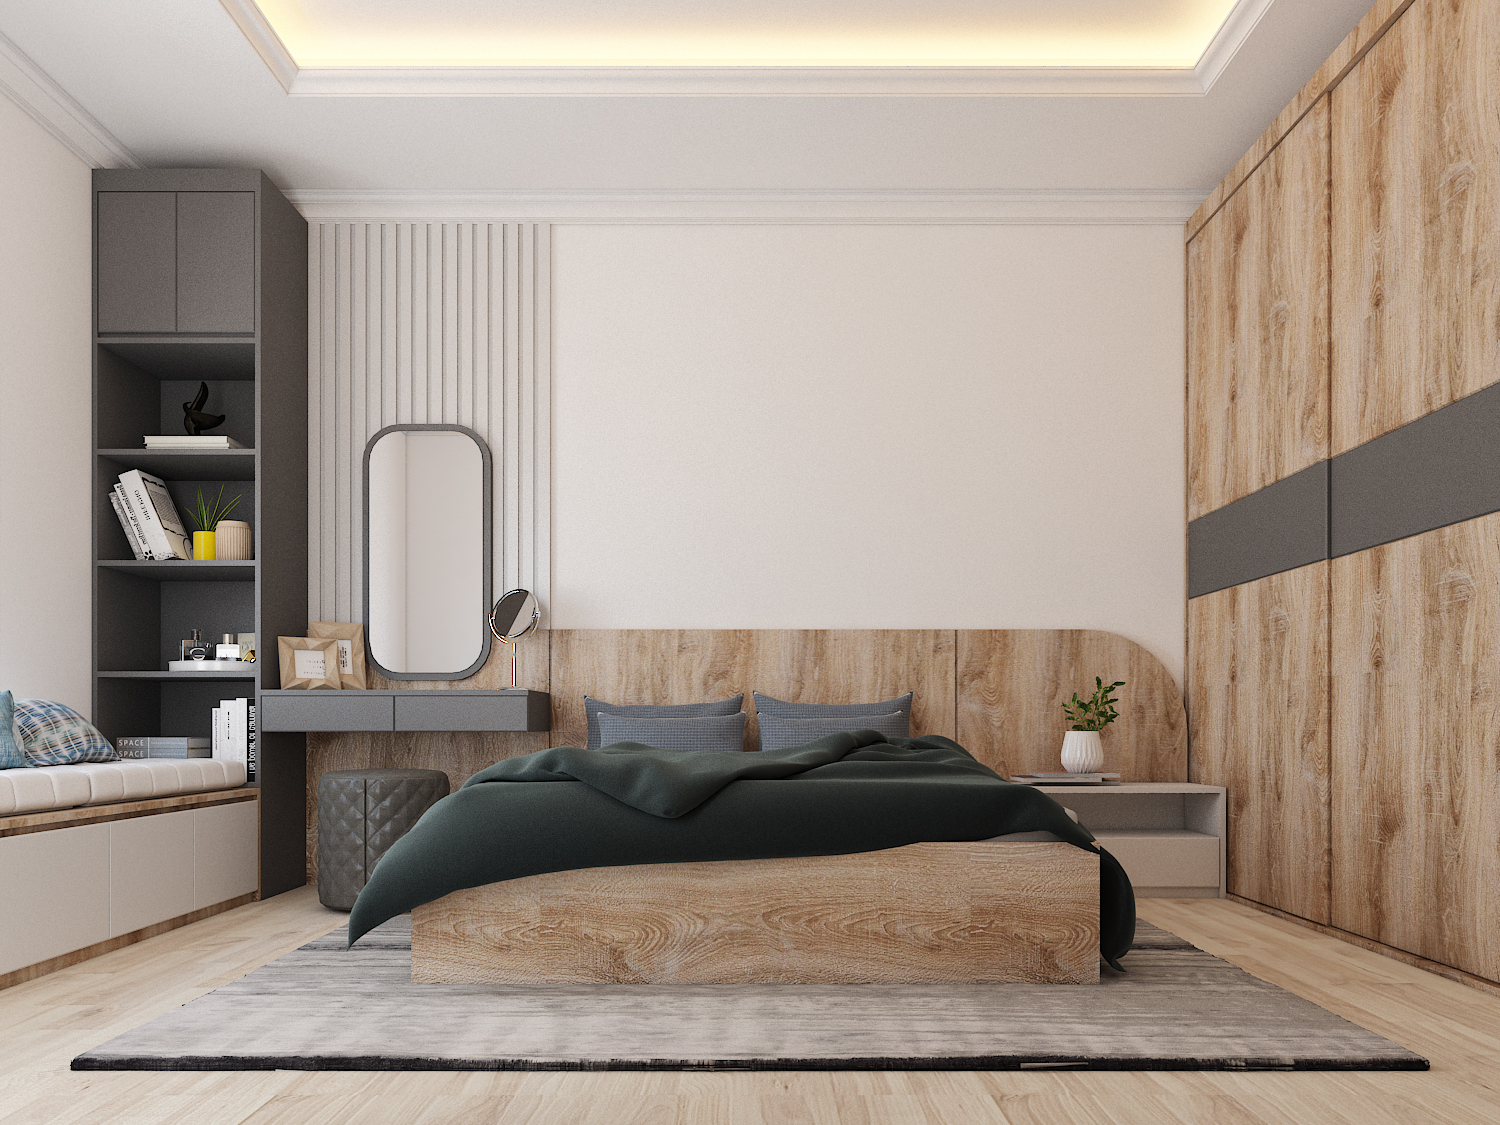 Phong cách thiết kế sang trọng cùng tông màu trắng tinh tế, kết hợp cùng nội thất gỗ ấm cúng